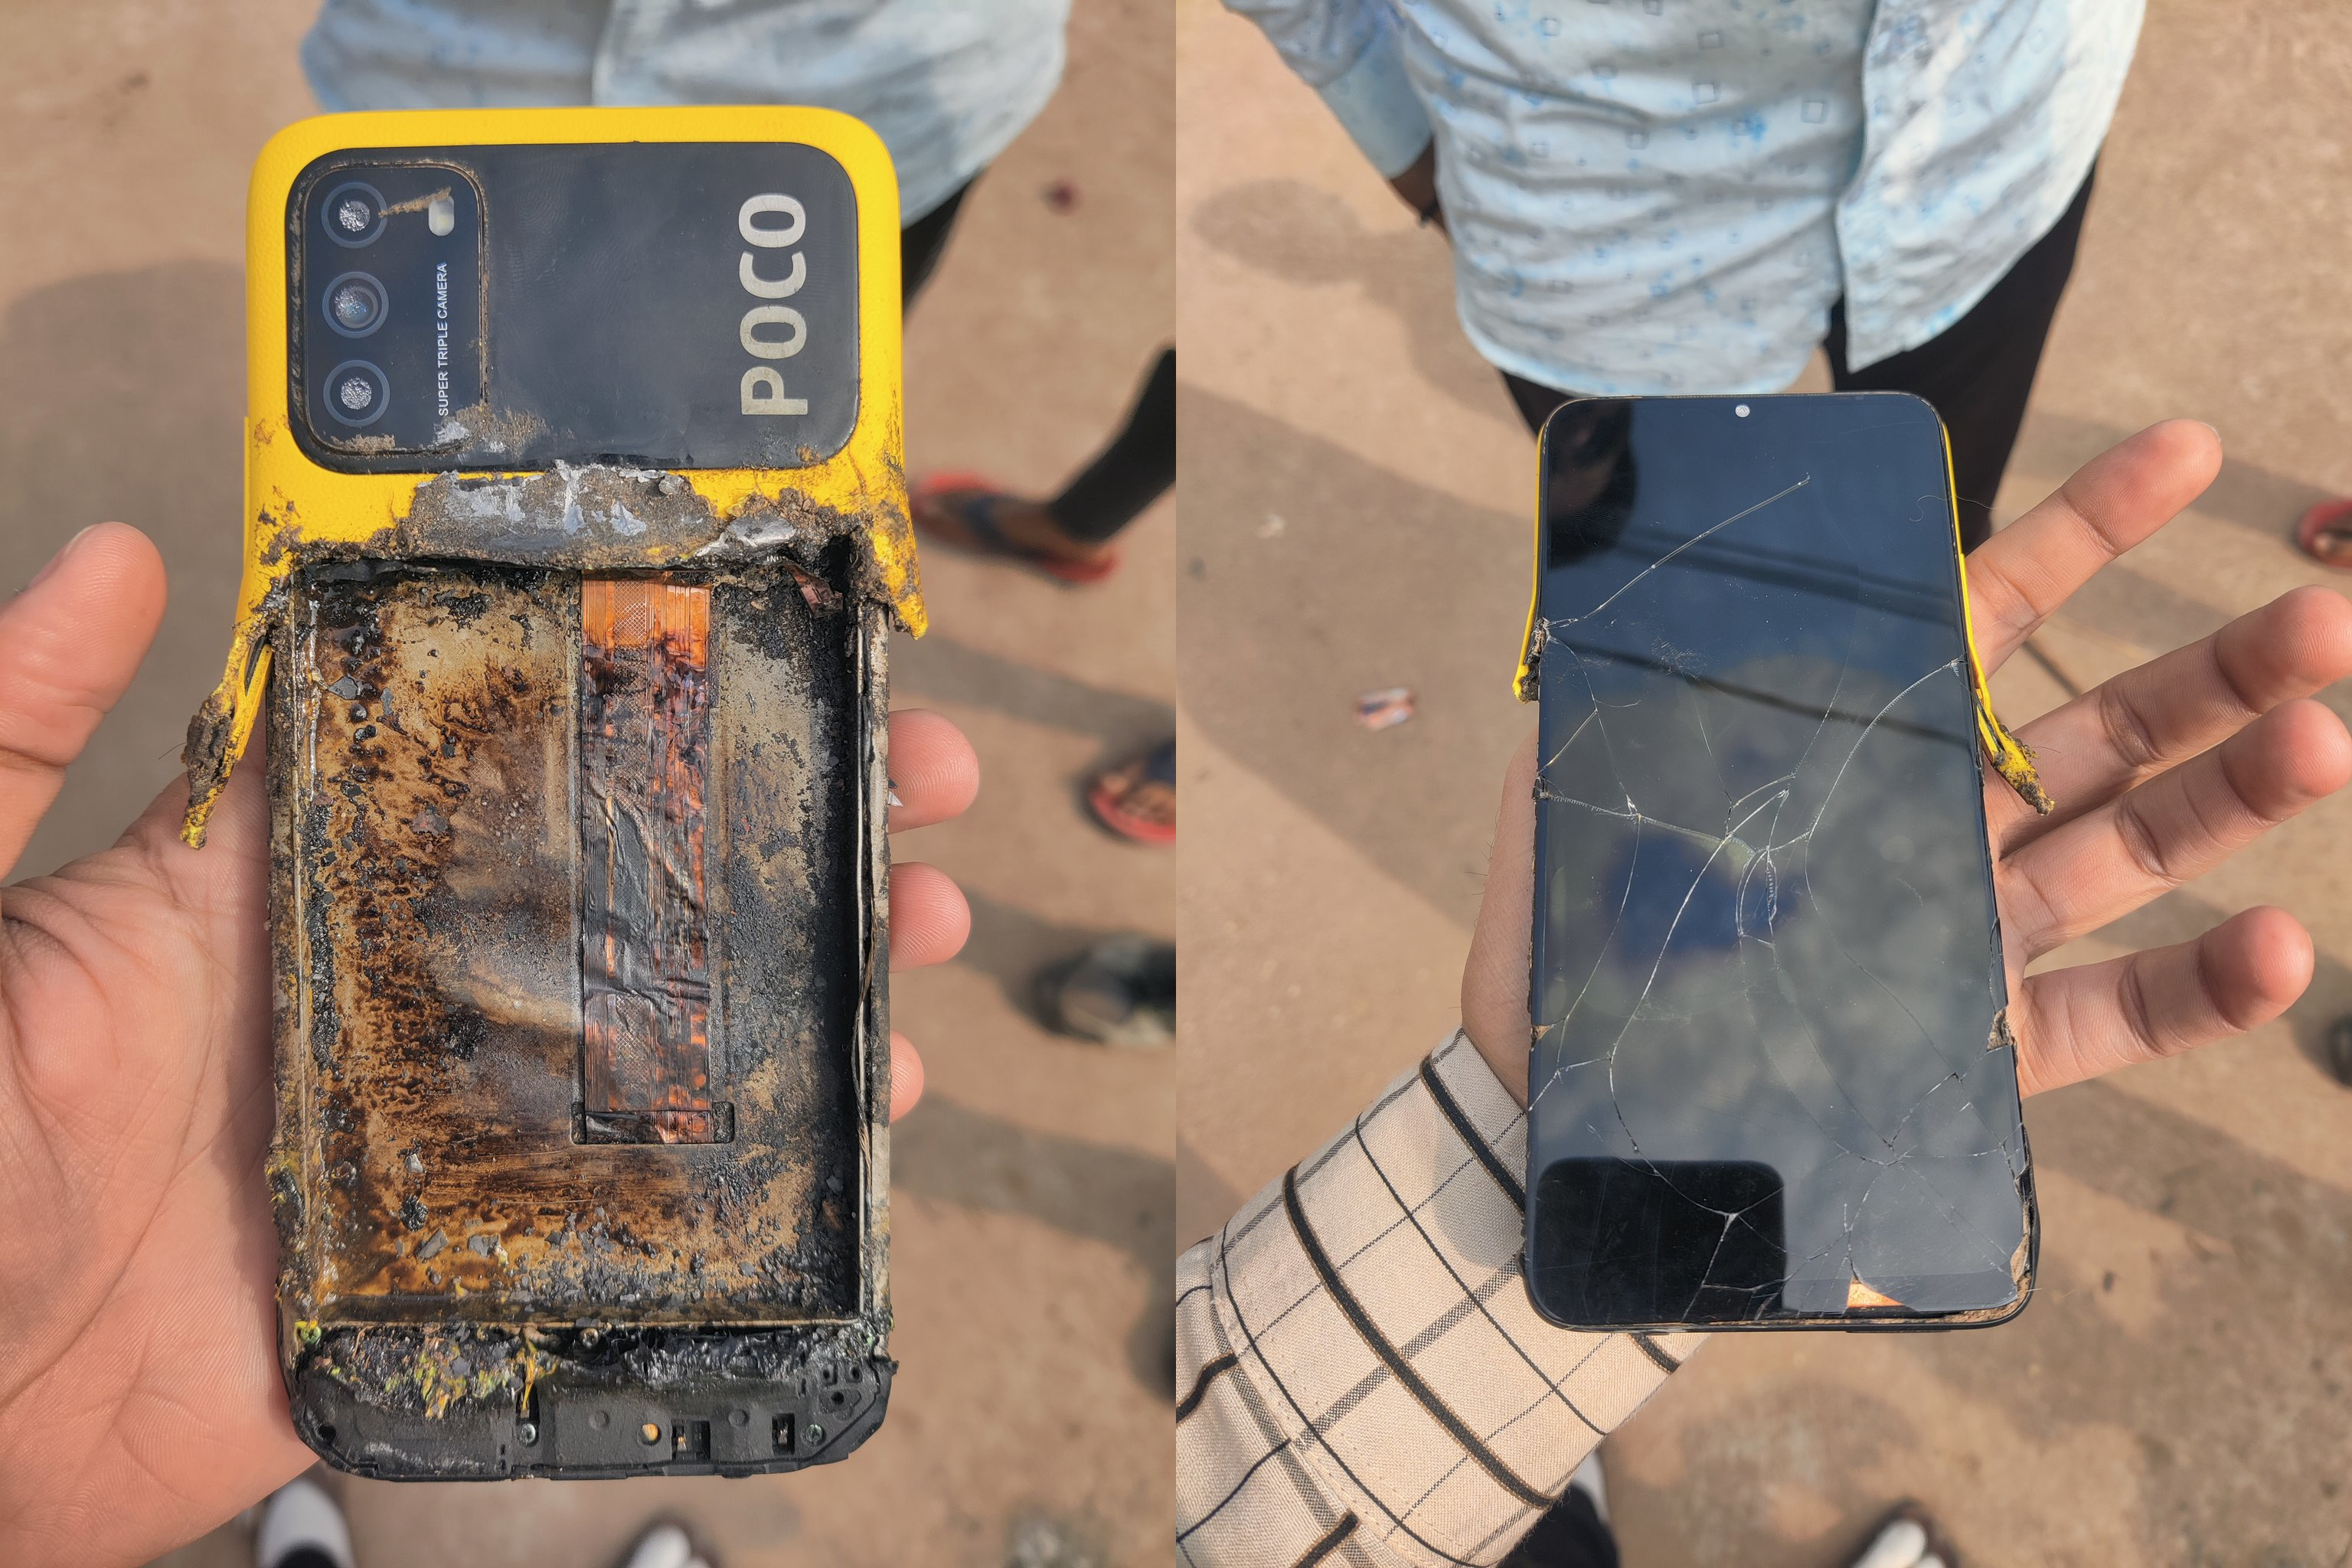 "Das ist der schlechteste Service- und Qualitätstest": Ein weiteres Xiaomi-Smartphone der Untermarke - Poco M3 - explodierte